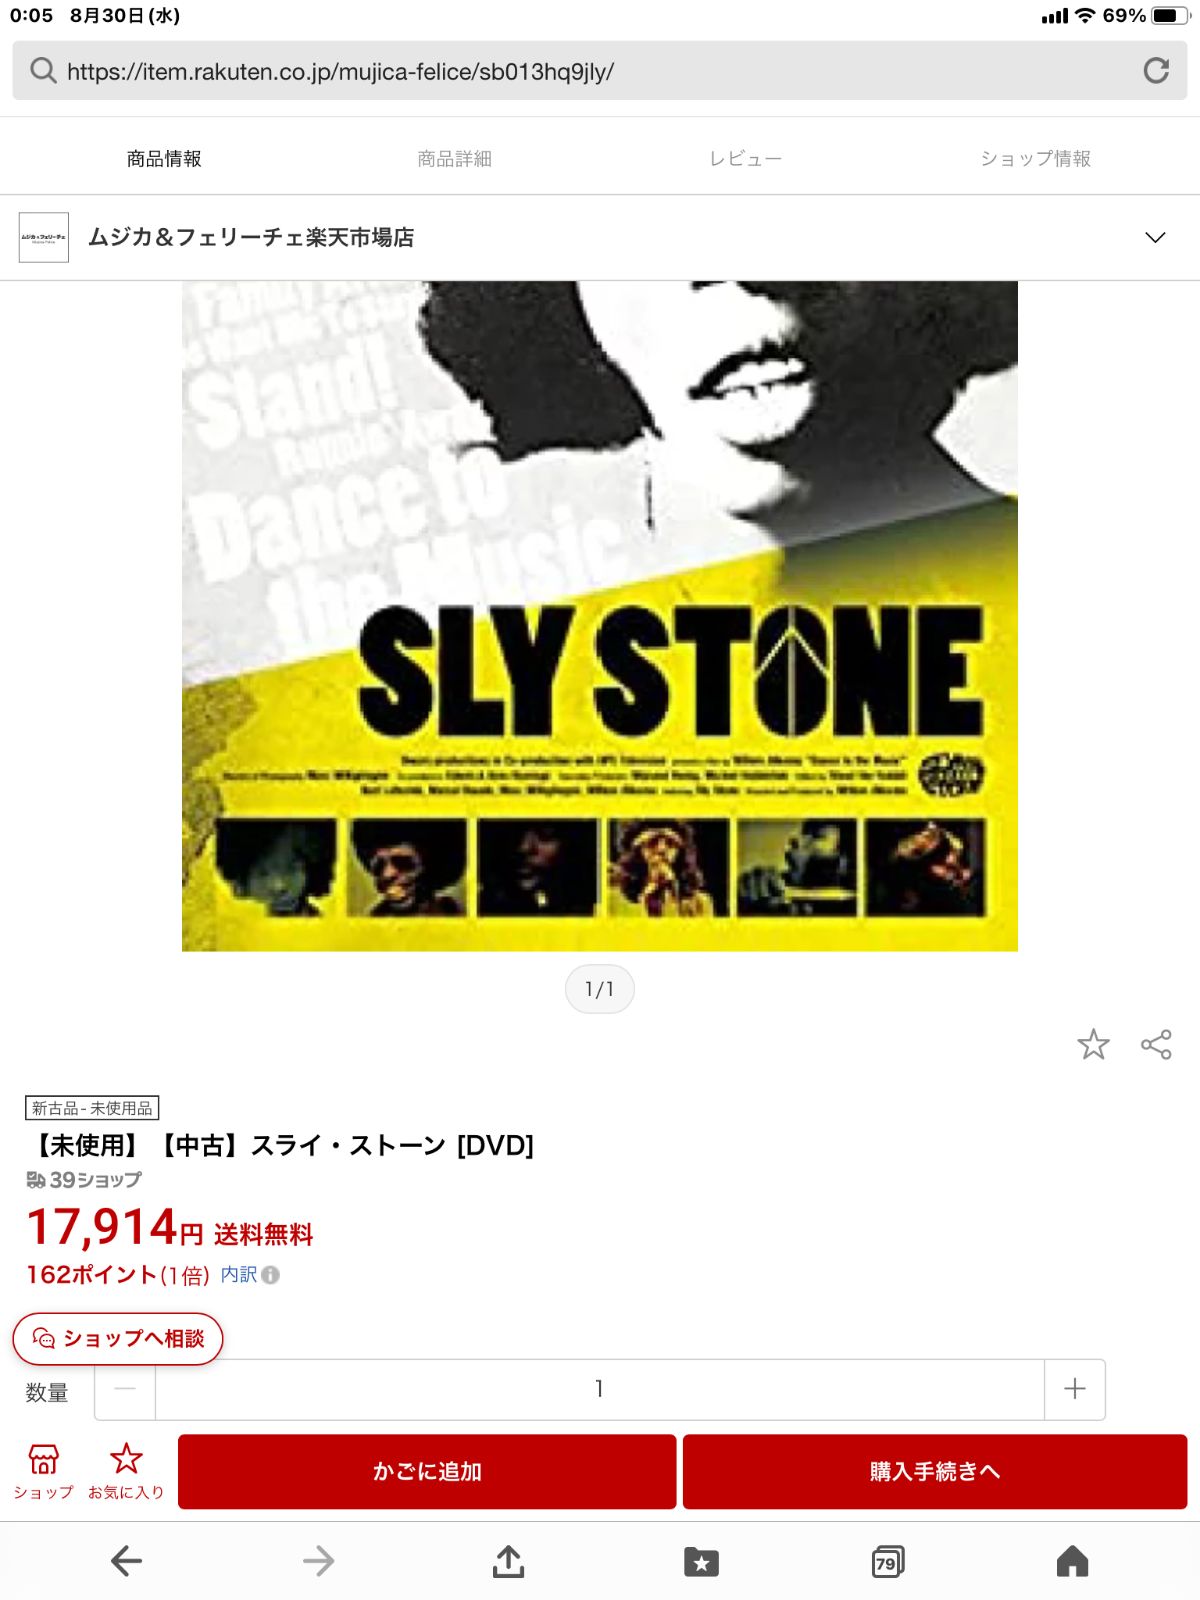 スライ・ストーン 【DVD】 SLY STONE 2015年 新品未開封貴重品 - Small ...